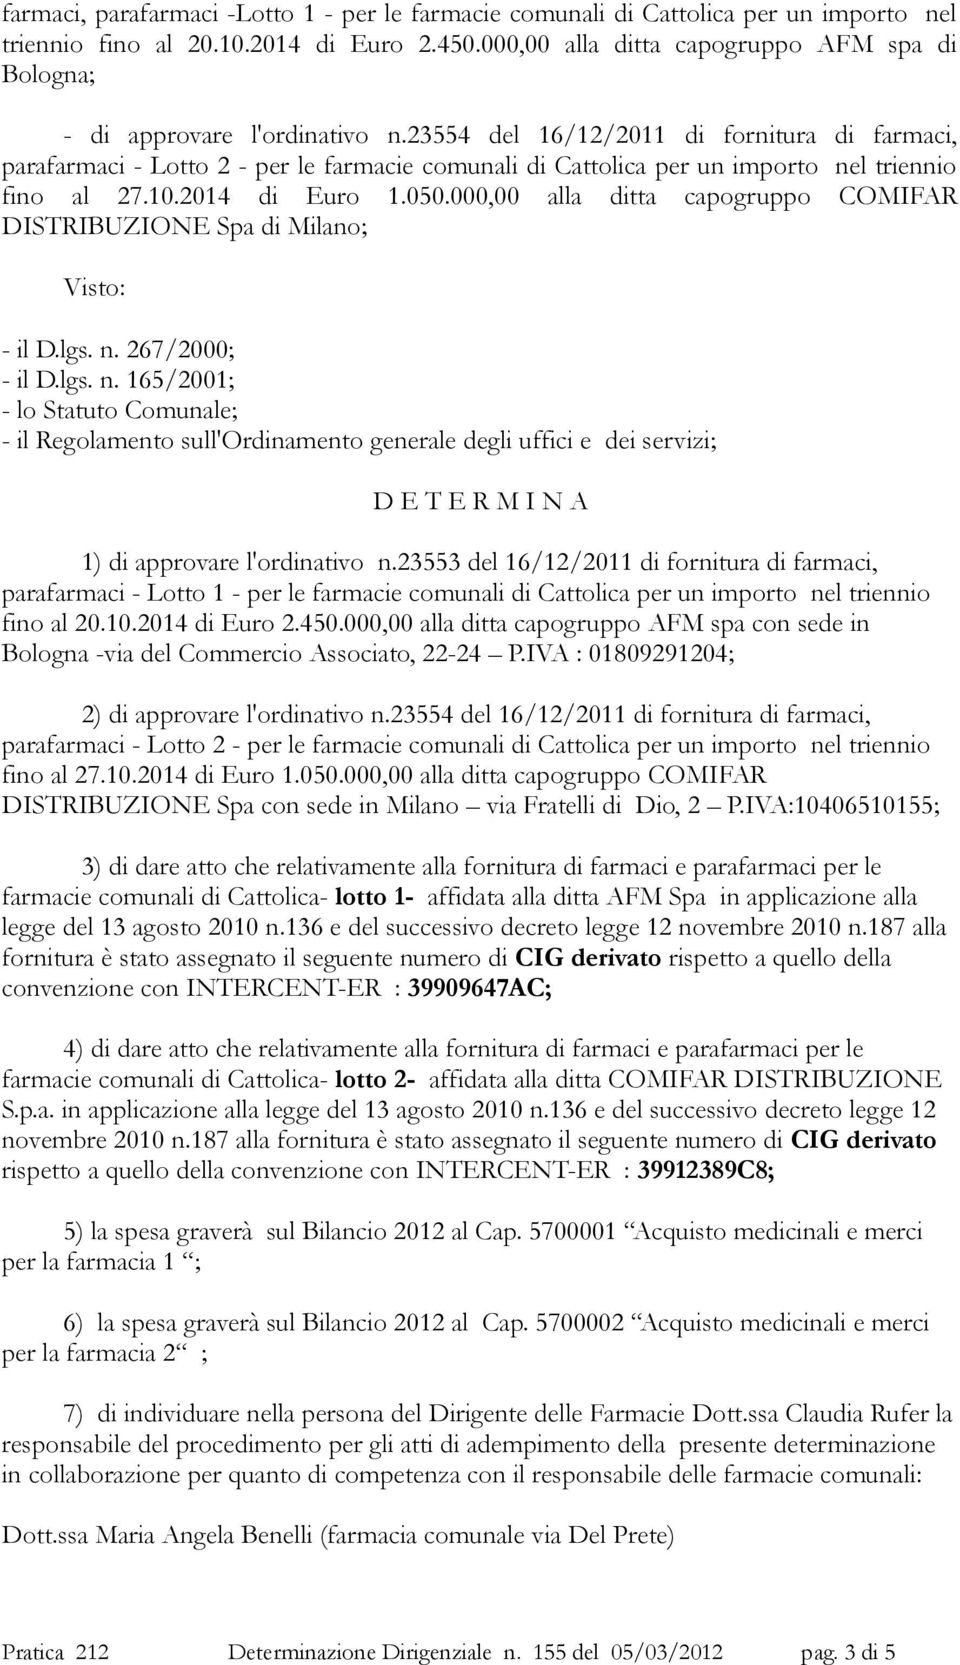 23554 del 16/12/2011 di fornitura di farmaci, parafarmaci - Lotto 2 - per le farmacie comunali di Cattolica per un importo nel triennio fino al 27.10.2014 di Euro 1.050.